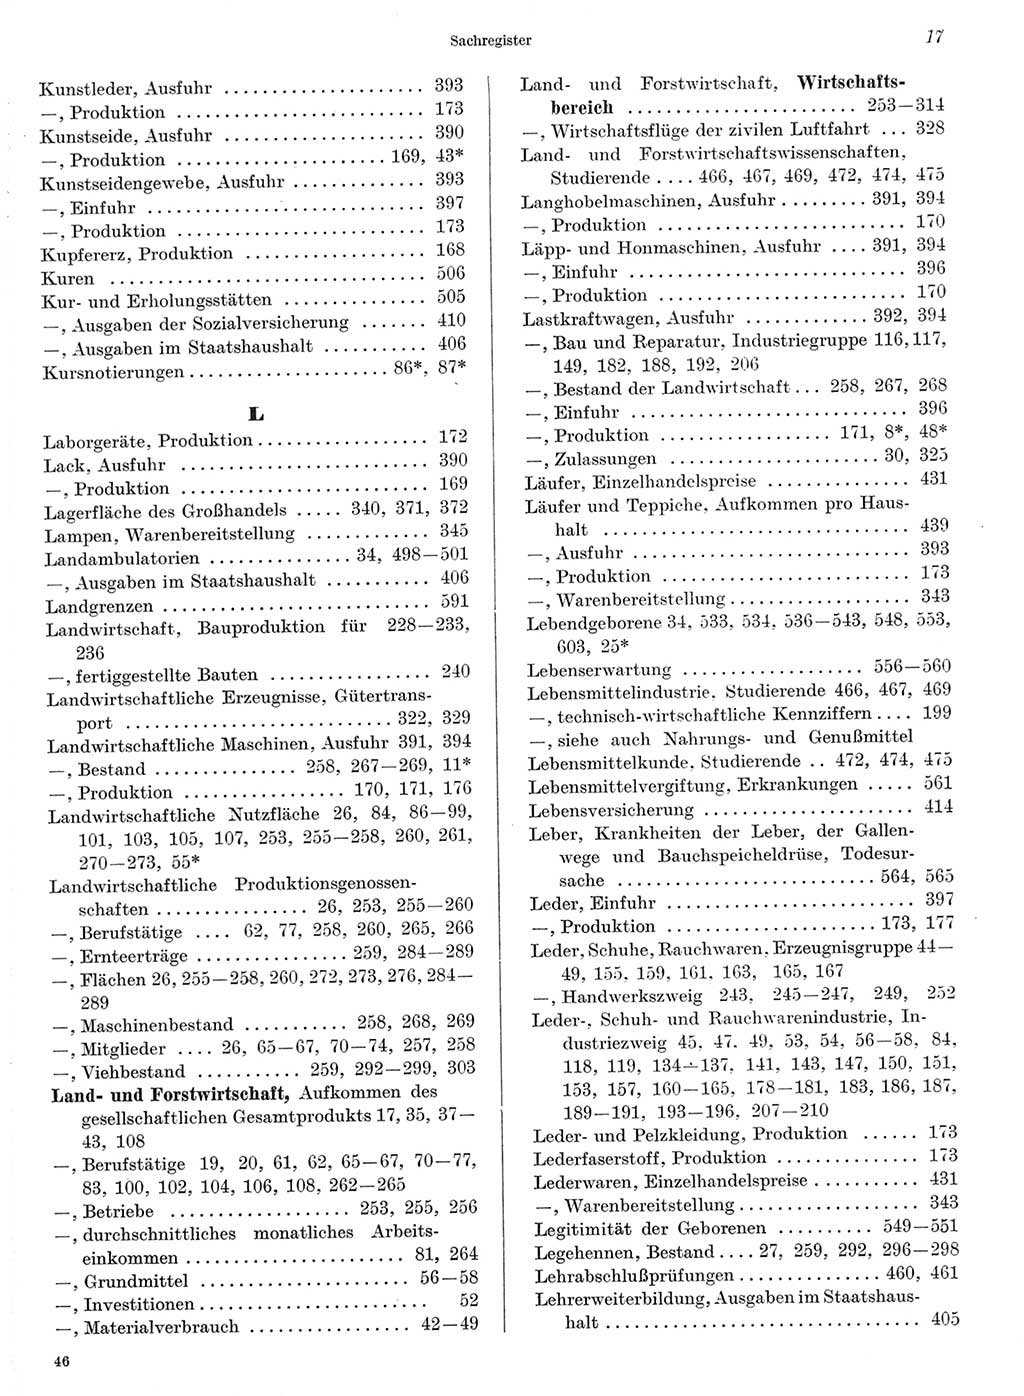 Statistisches Jahrbuch der Deutschen Demokratischen Republik (DDR) 1968, Seite 17 (Stat. Jb. DDR 1968, S. 17)